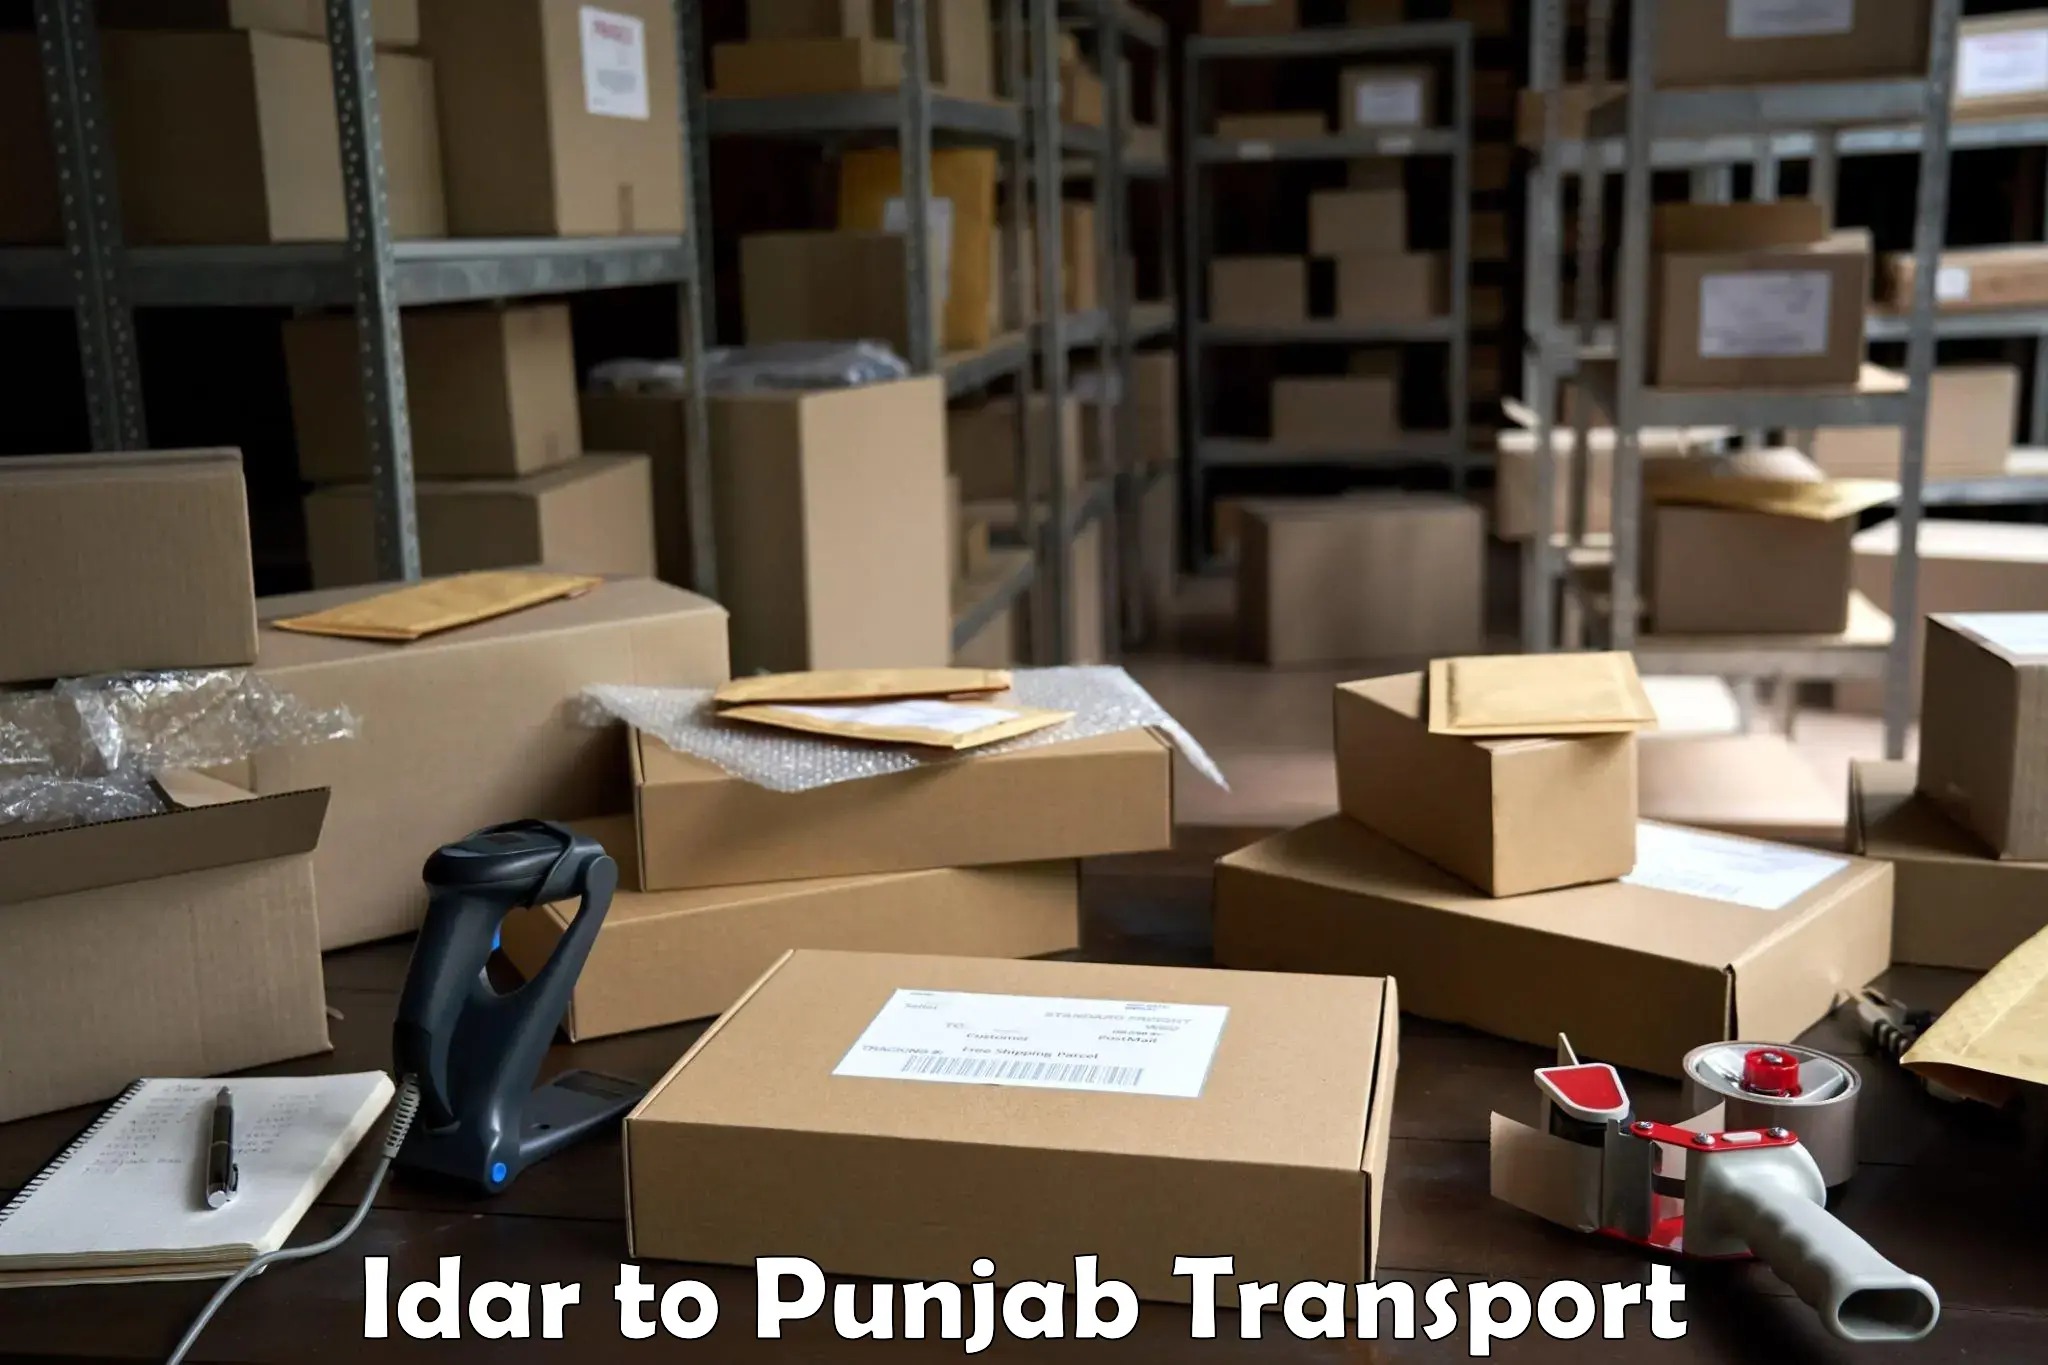 Parcel transport services Idar to Central University of Punjab Bathinda